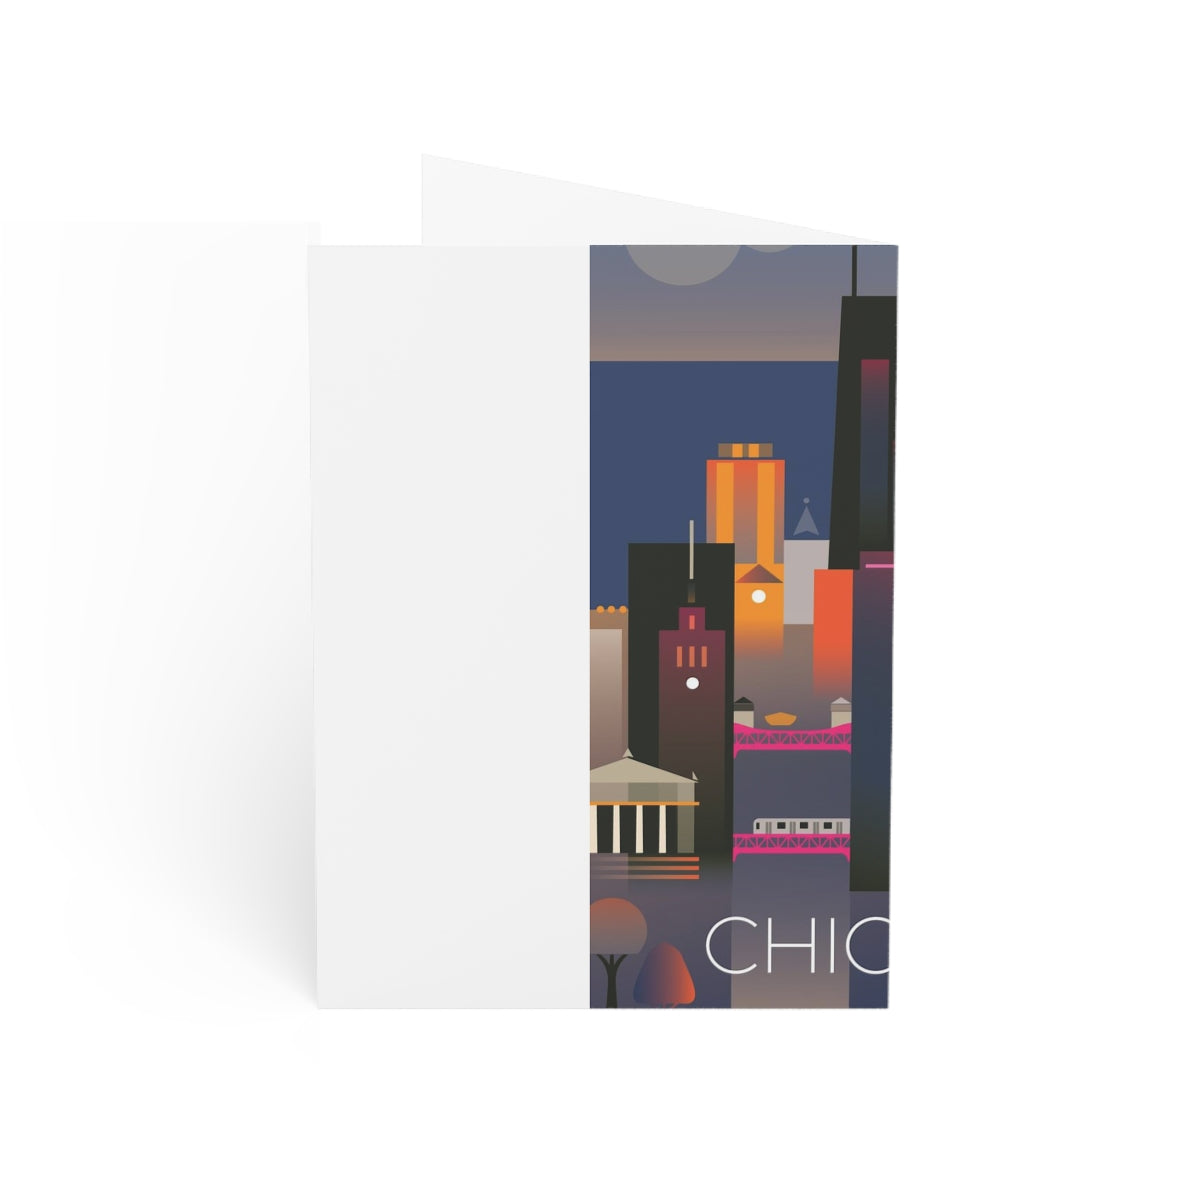 Chicago Cartes mates pliées + Enveloppes (10pcs)